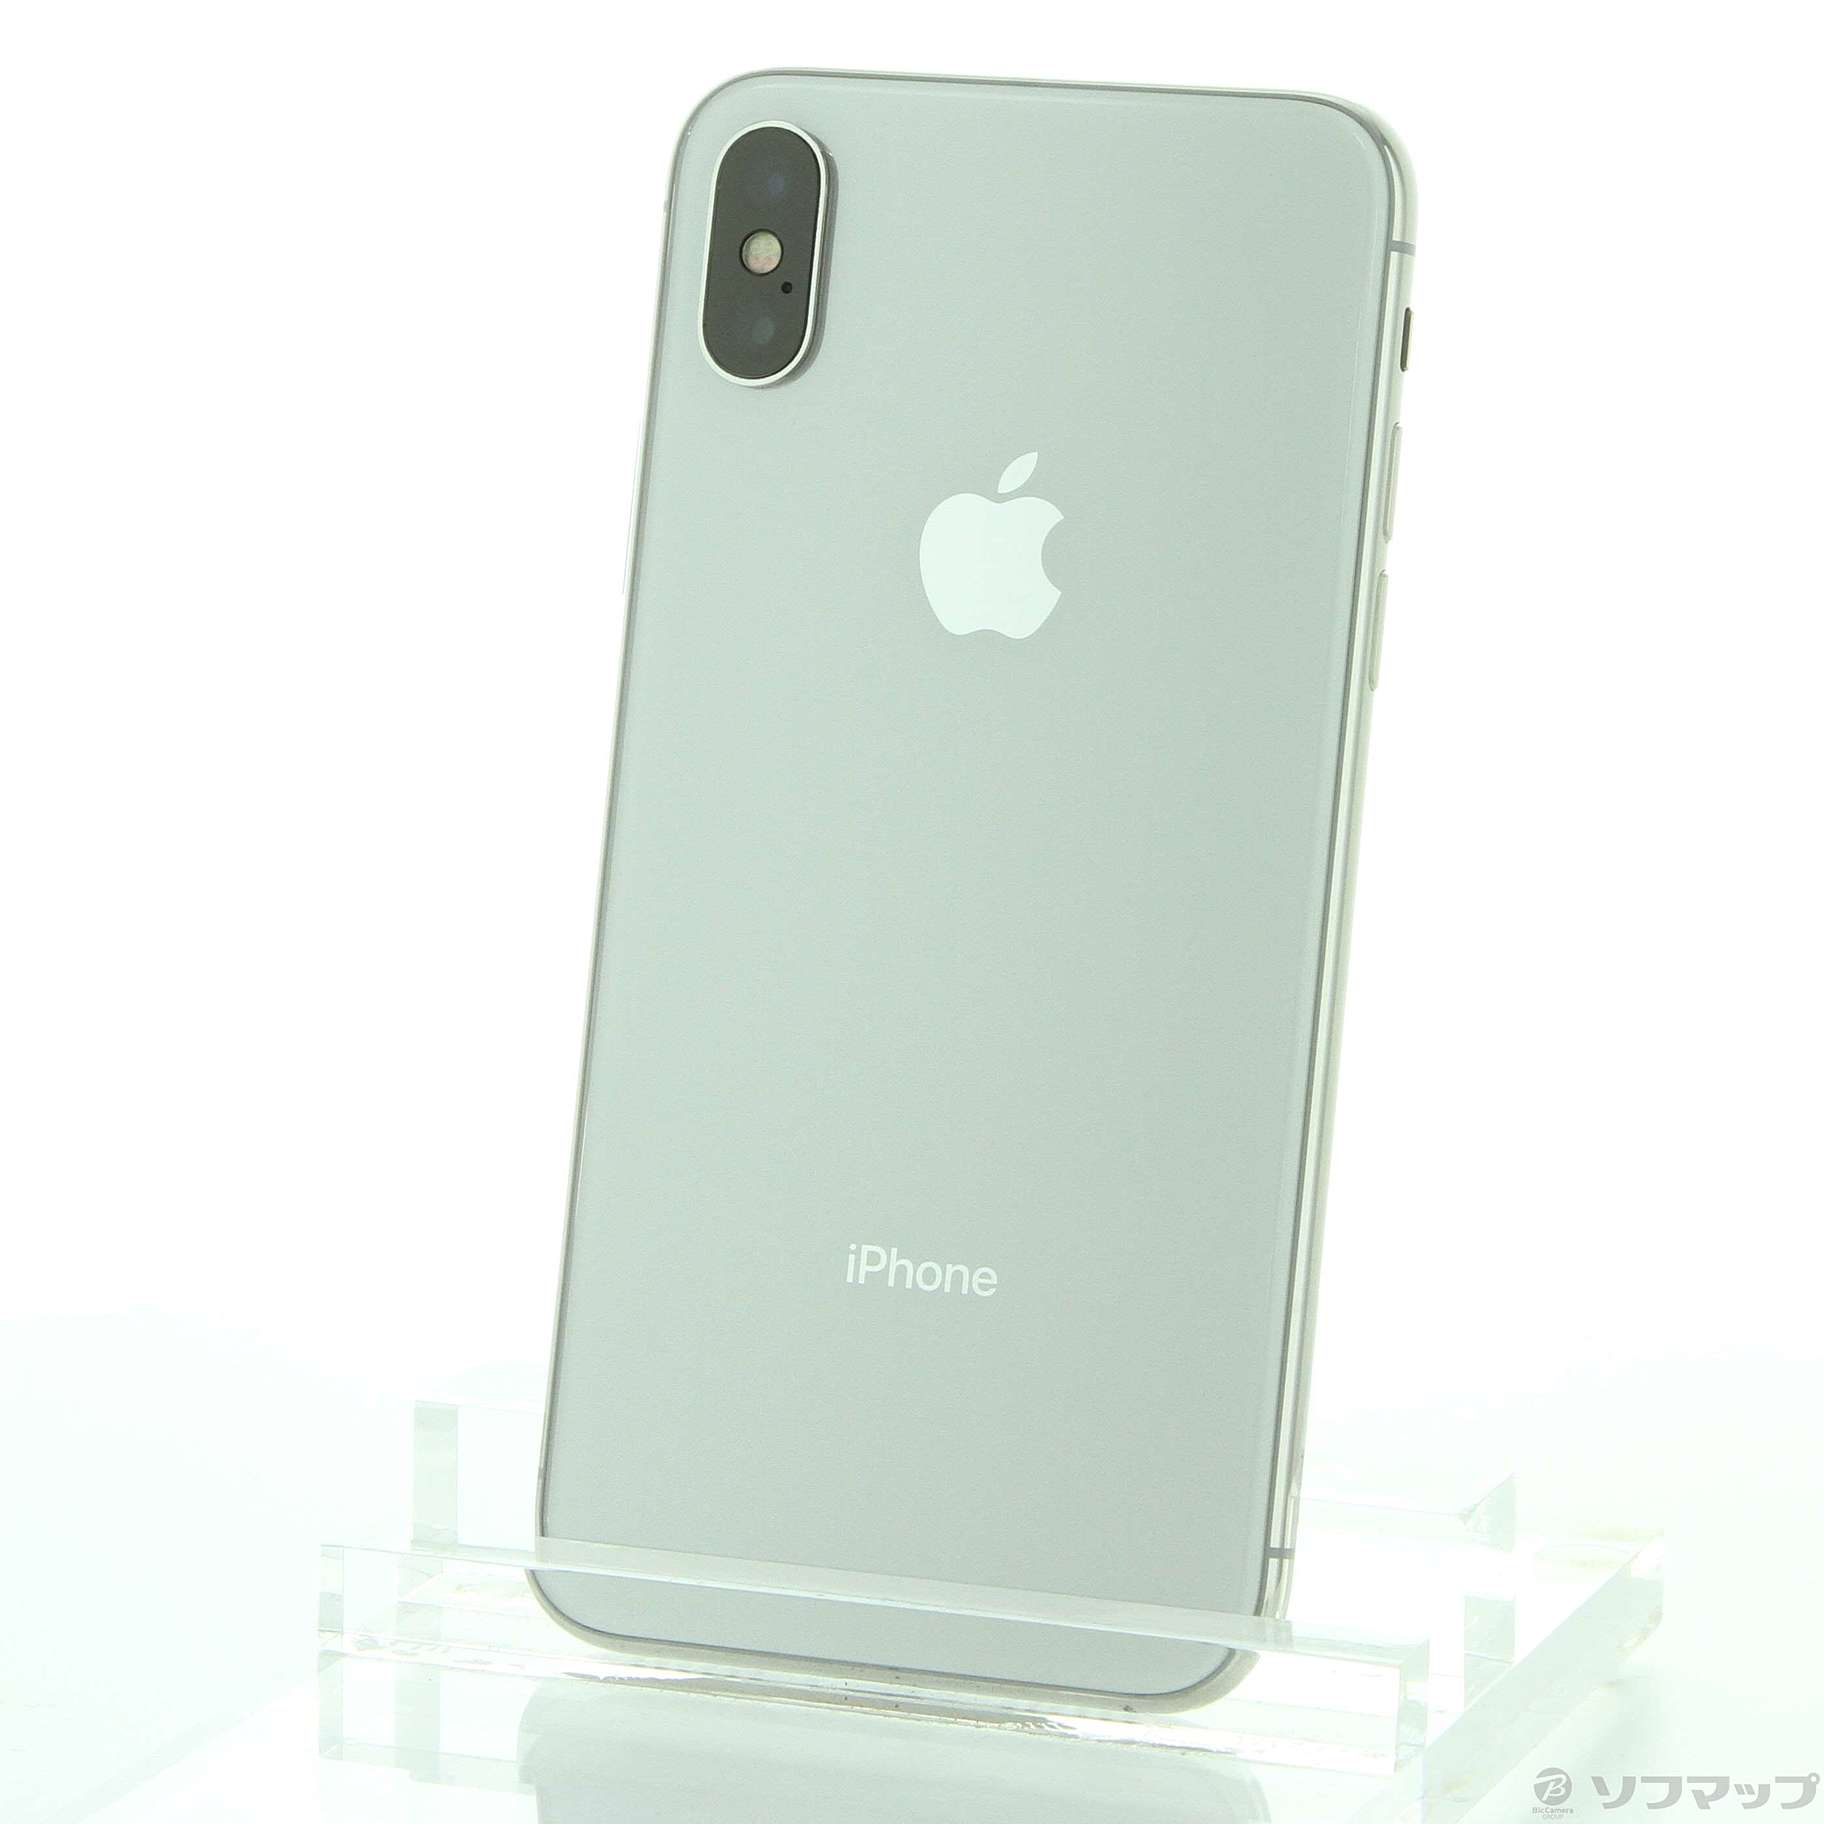 iPhoneXカラーiPhoneX 64GB シルバー